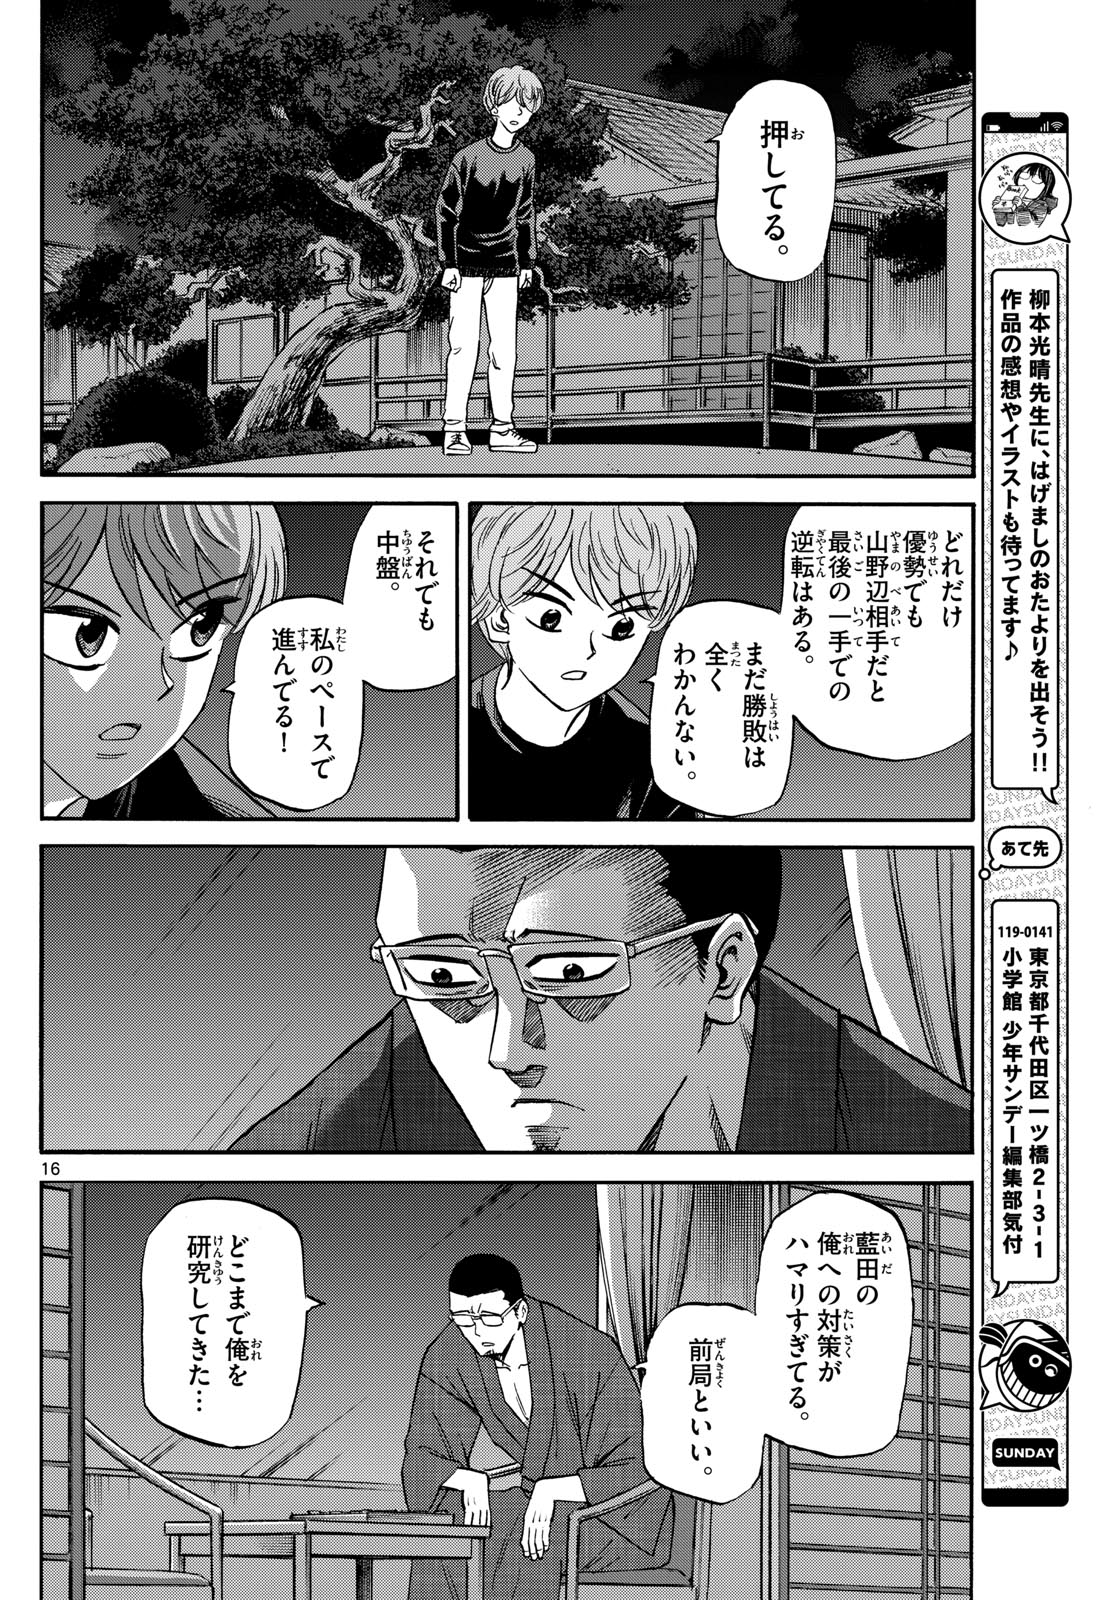 Tatsu to Ichigo - Chapter 169 - Page 16